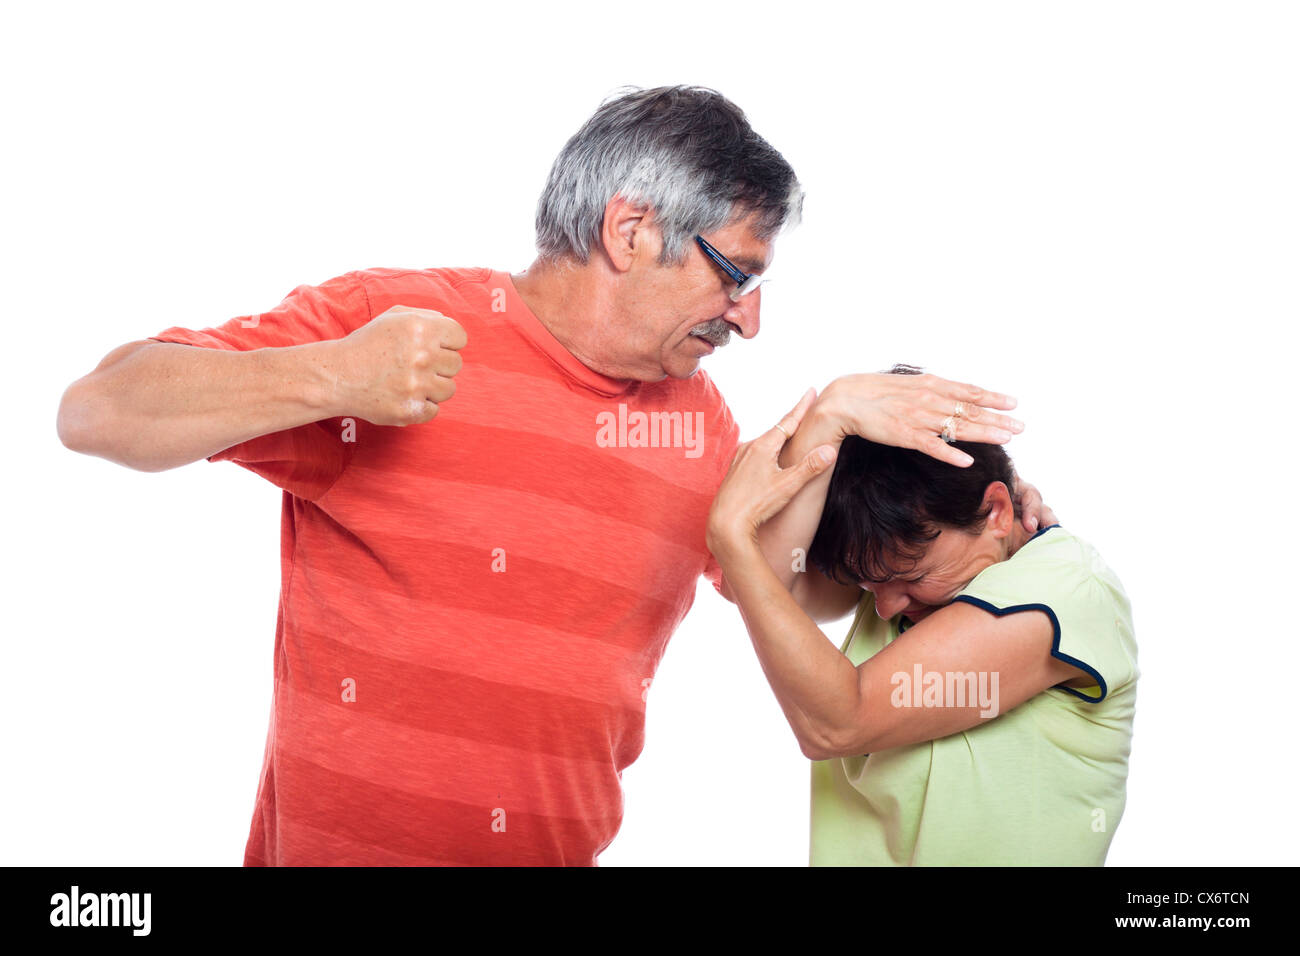 Häusliche Gewalt-Missbrauch-Konzept, Foto von aggressiven Mann und unglückliche Frau, isoliert auf weißem Hintergrund. Stockfoto